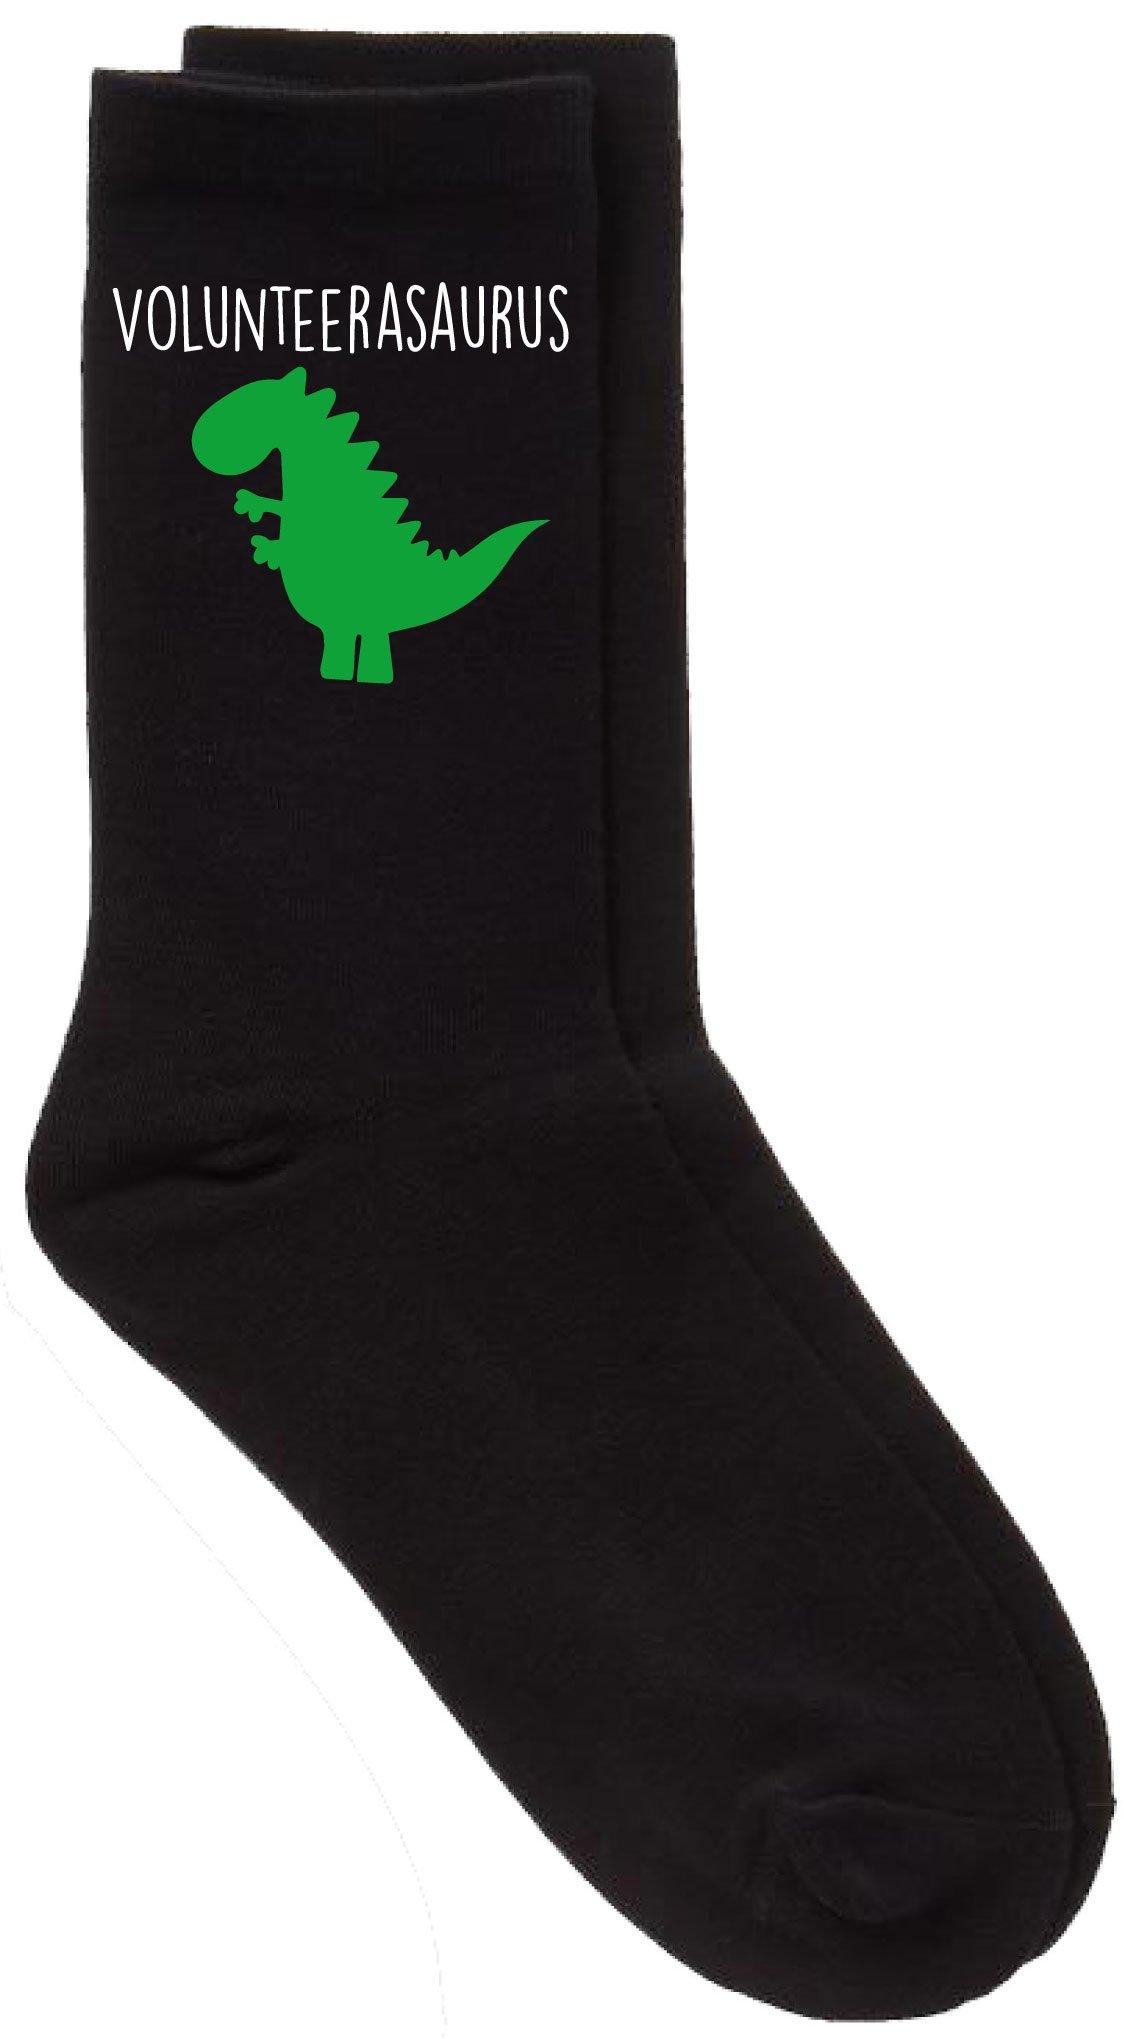 Volunteer Dinosaur Volunteerasaurus Black Calf Socks